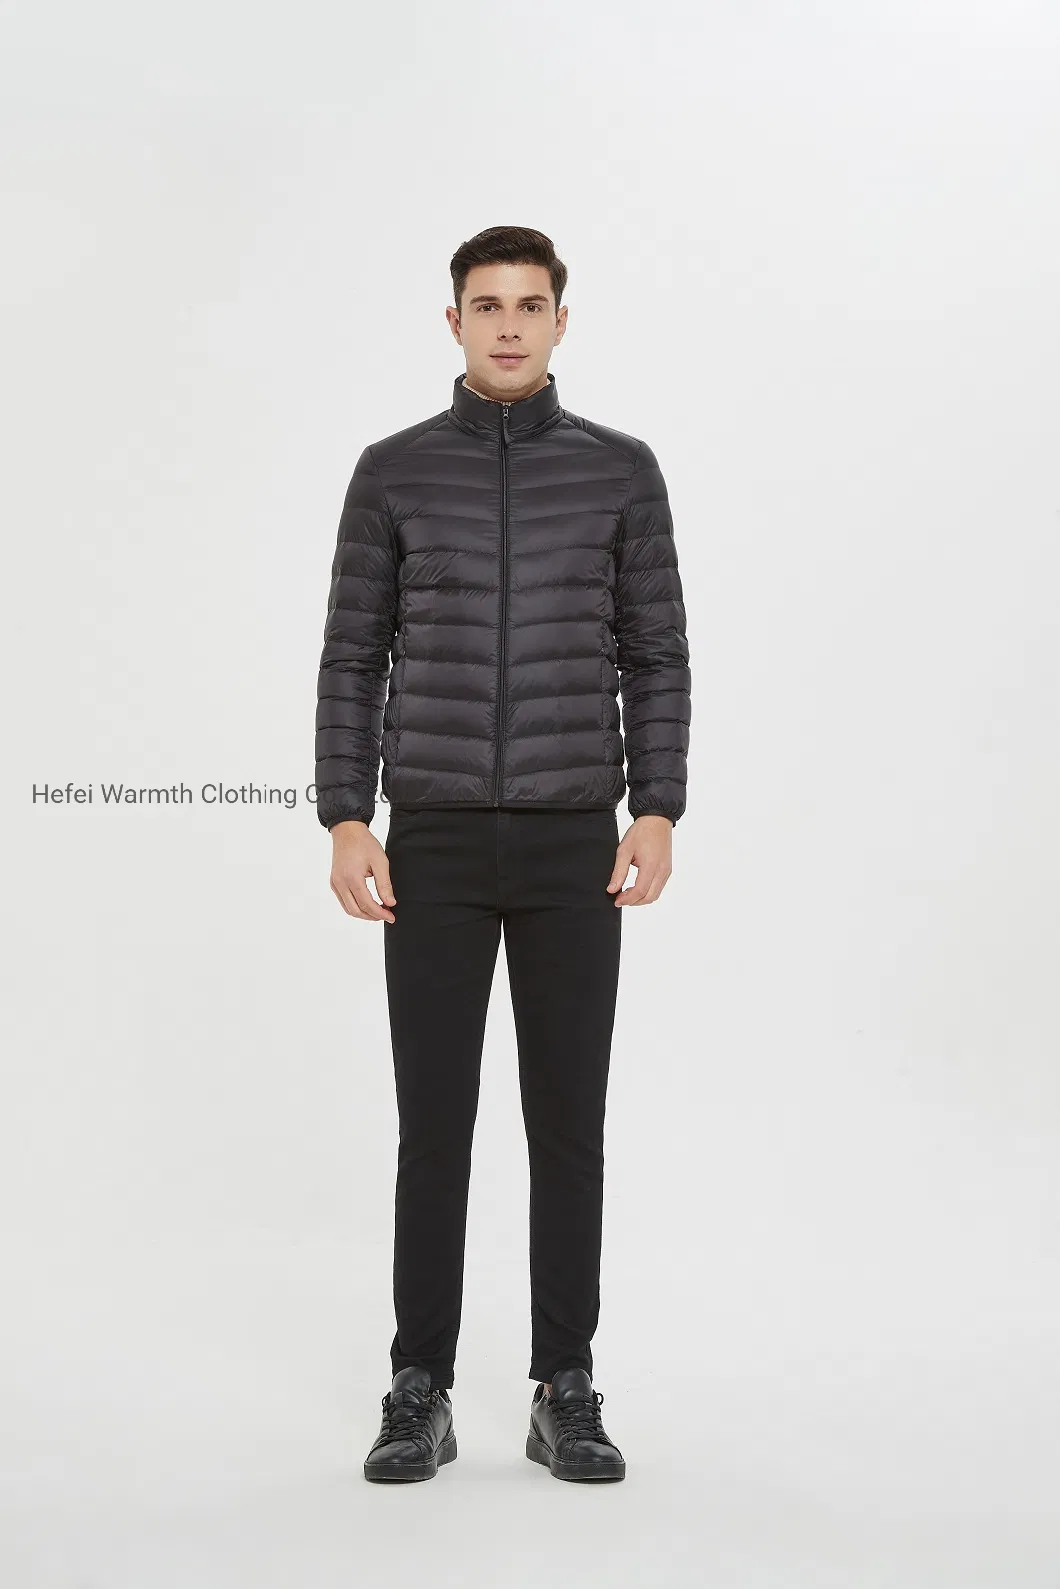 Wholesale OEM/ODM Men Women Packable Outdoor Reaction Water-Resistant Lightweight Winter Down Jacket